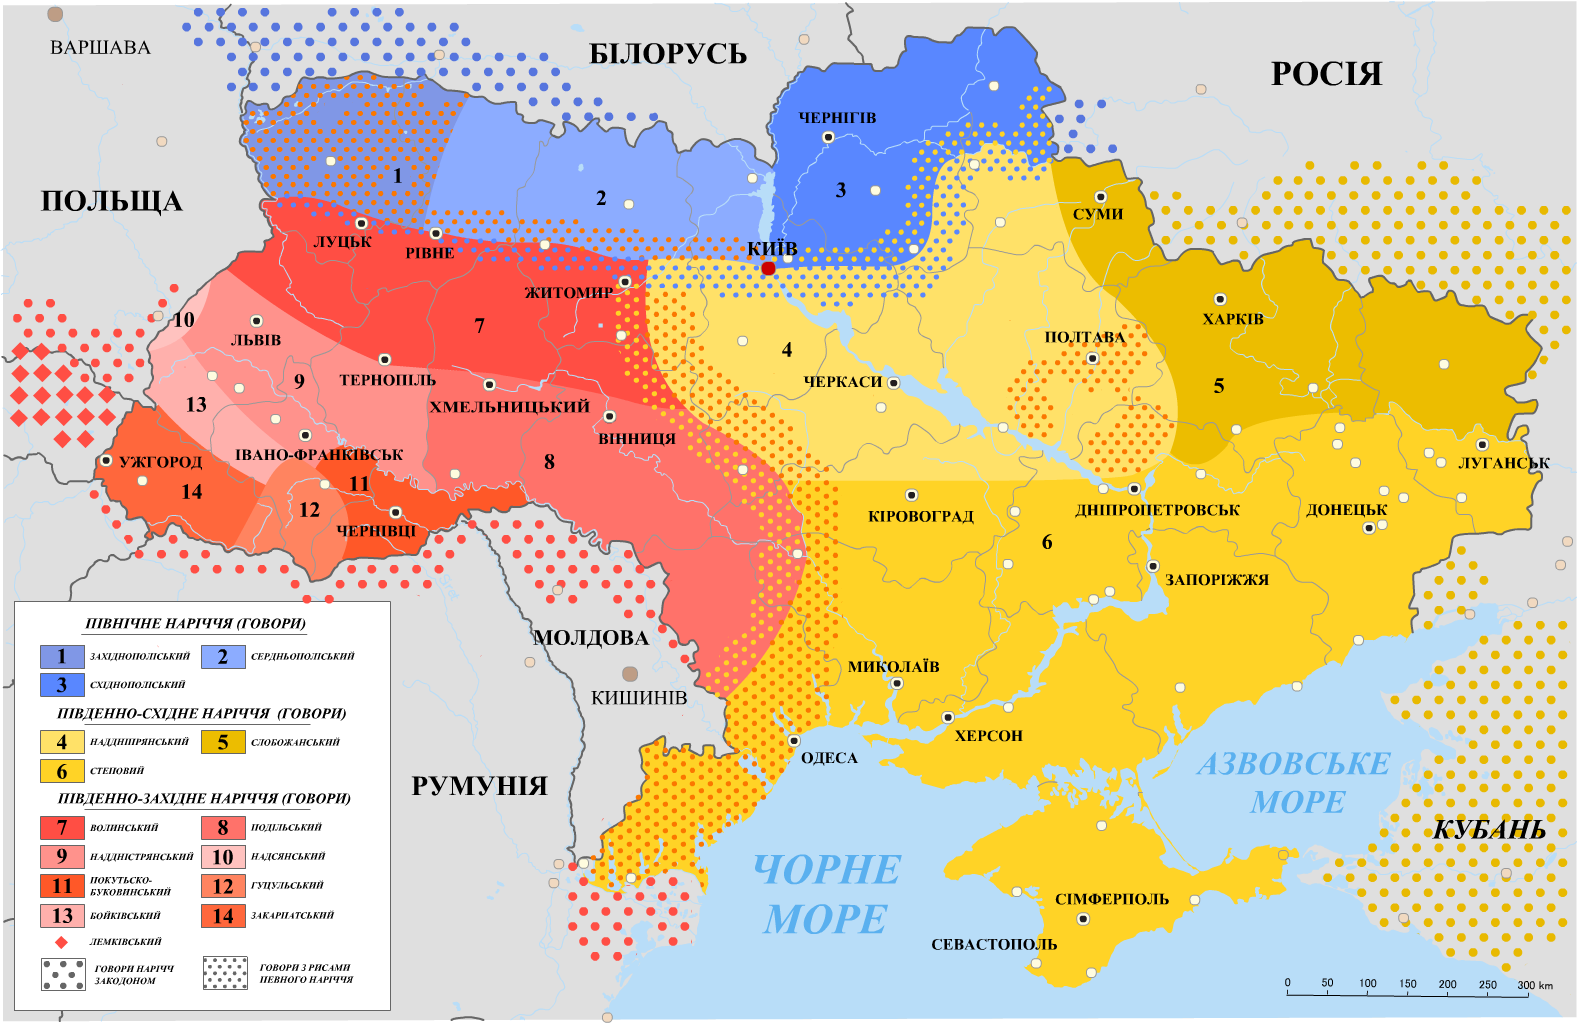 Региональные диалекты и говоры украинцев